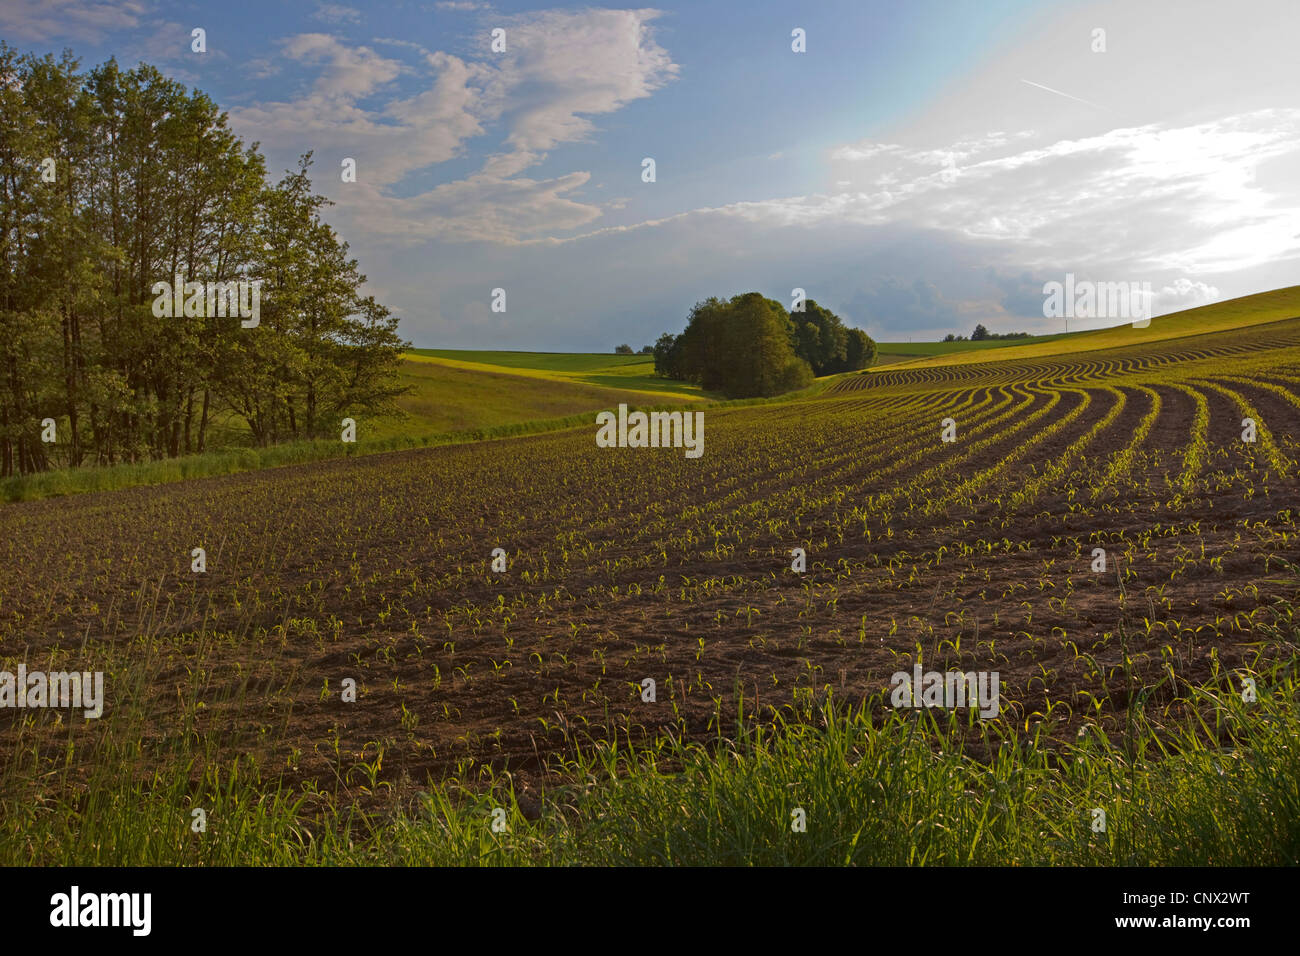 Le maïs, le maïs (Zea mays), champ avec des semis, l'Allemagne, la Bavière Banque D'Images